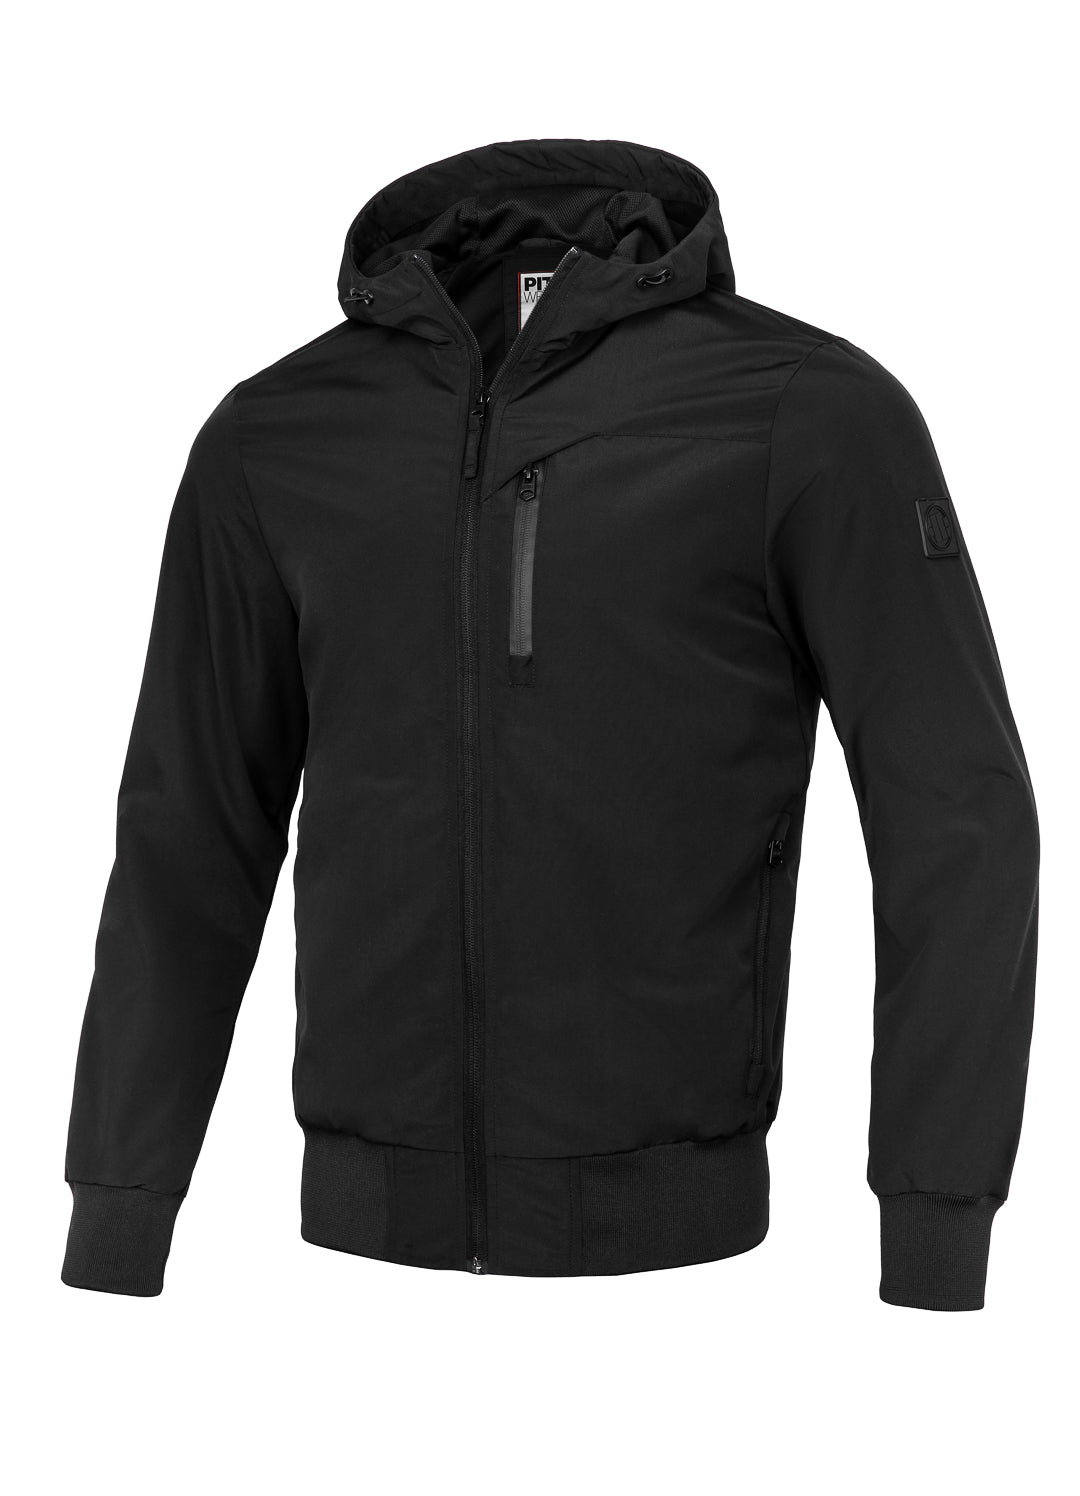 Hooded Jacket LAKEPORT Black - Pitbull West Coast International Store 